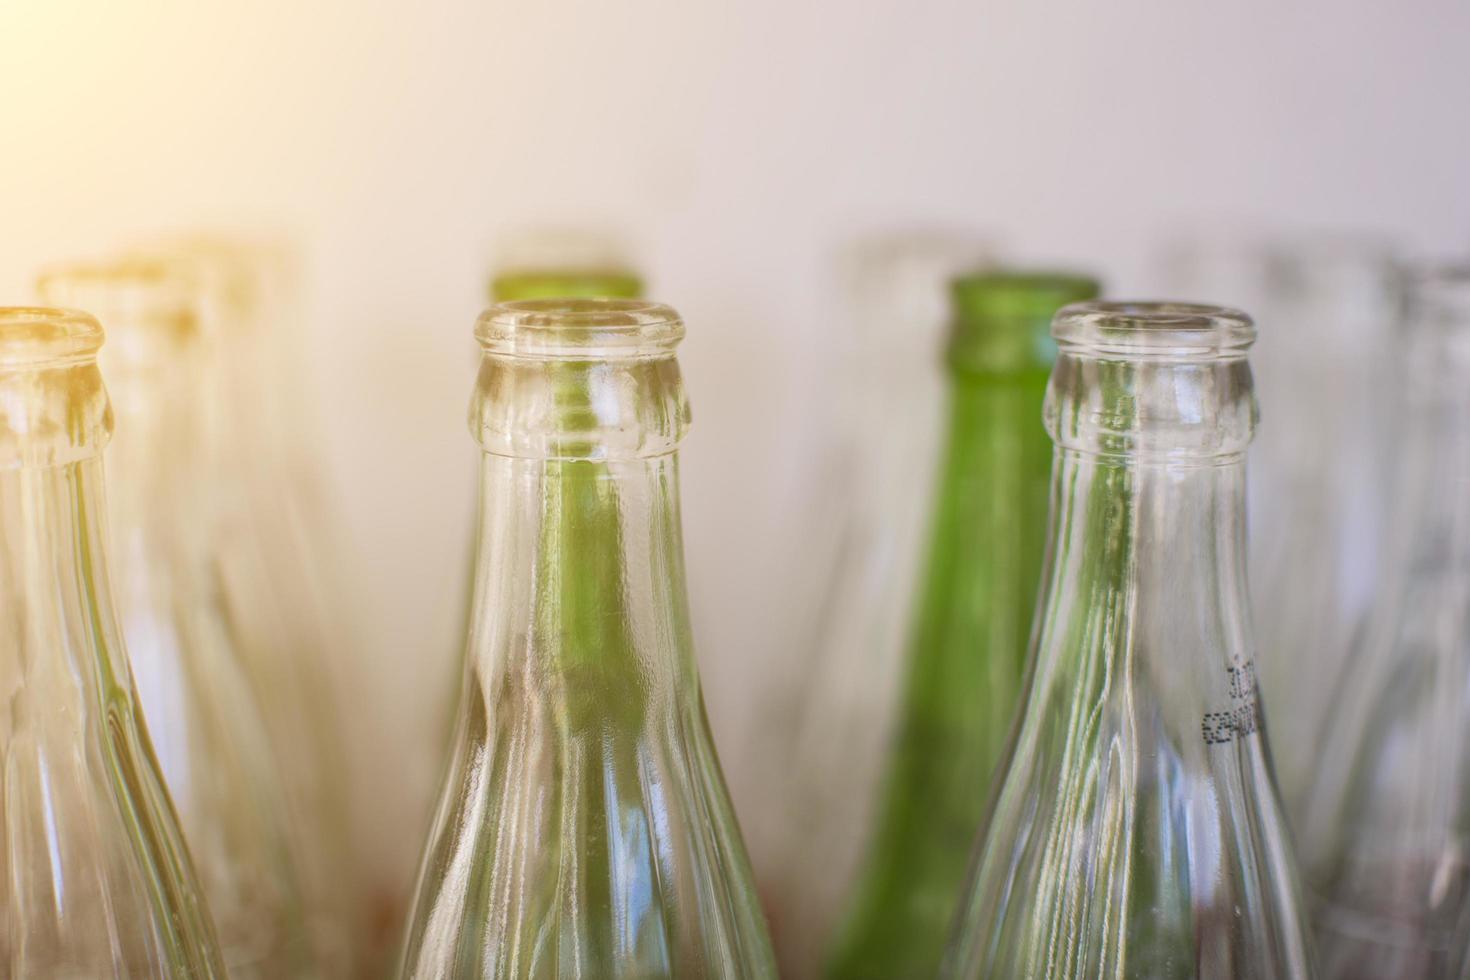 bouteilles vertes et transparentes photo